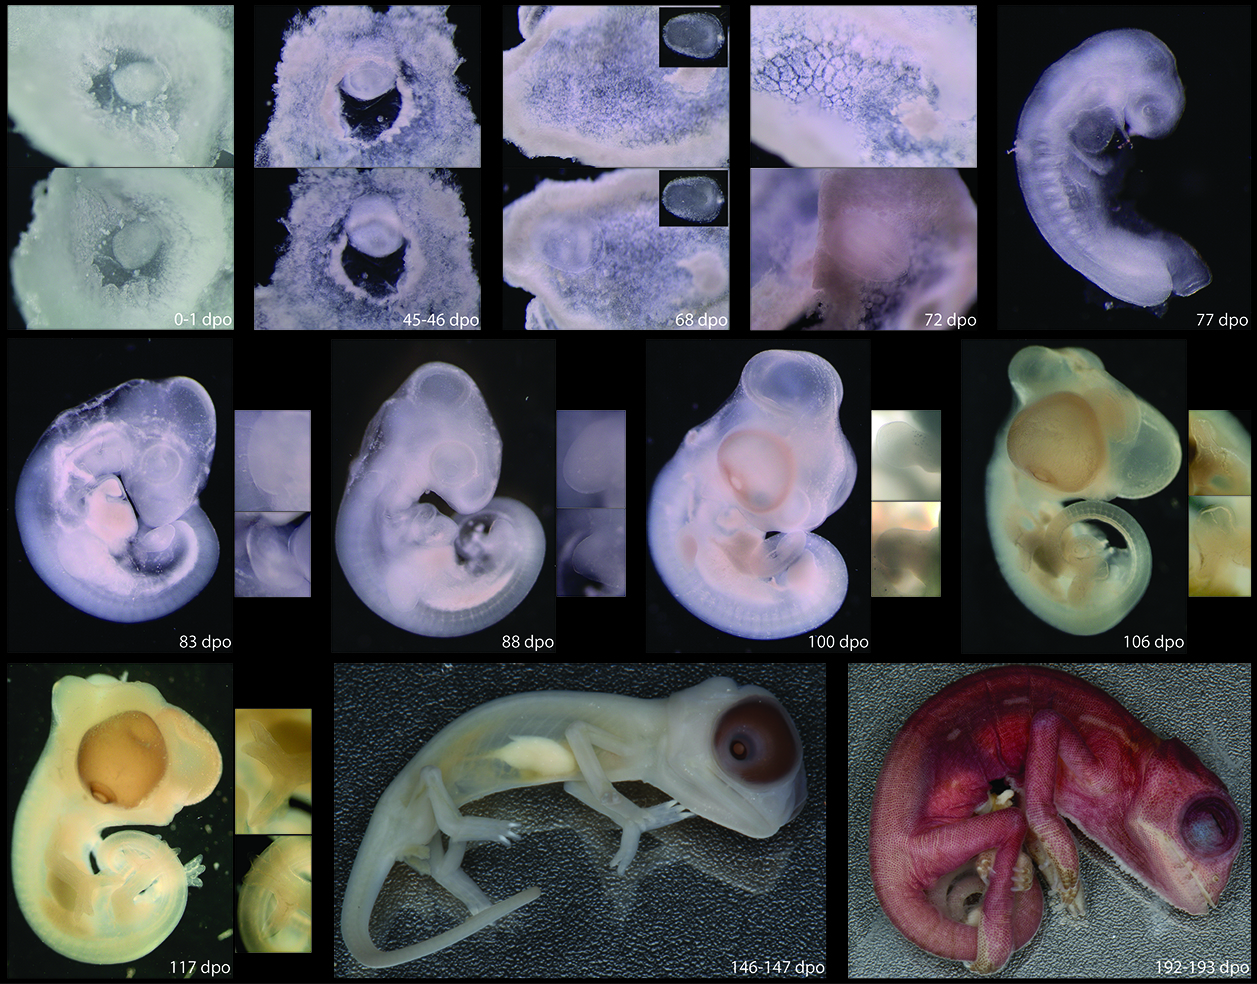 Veiled Chameleon embryonic development